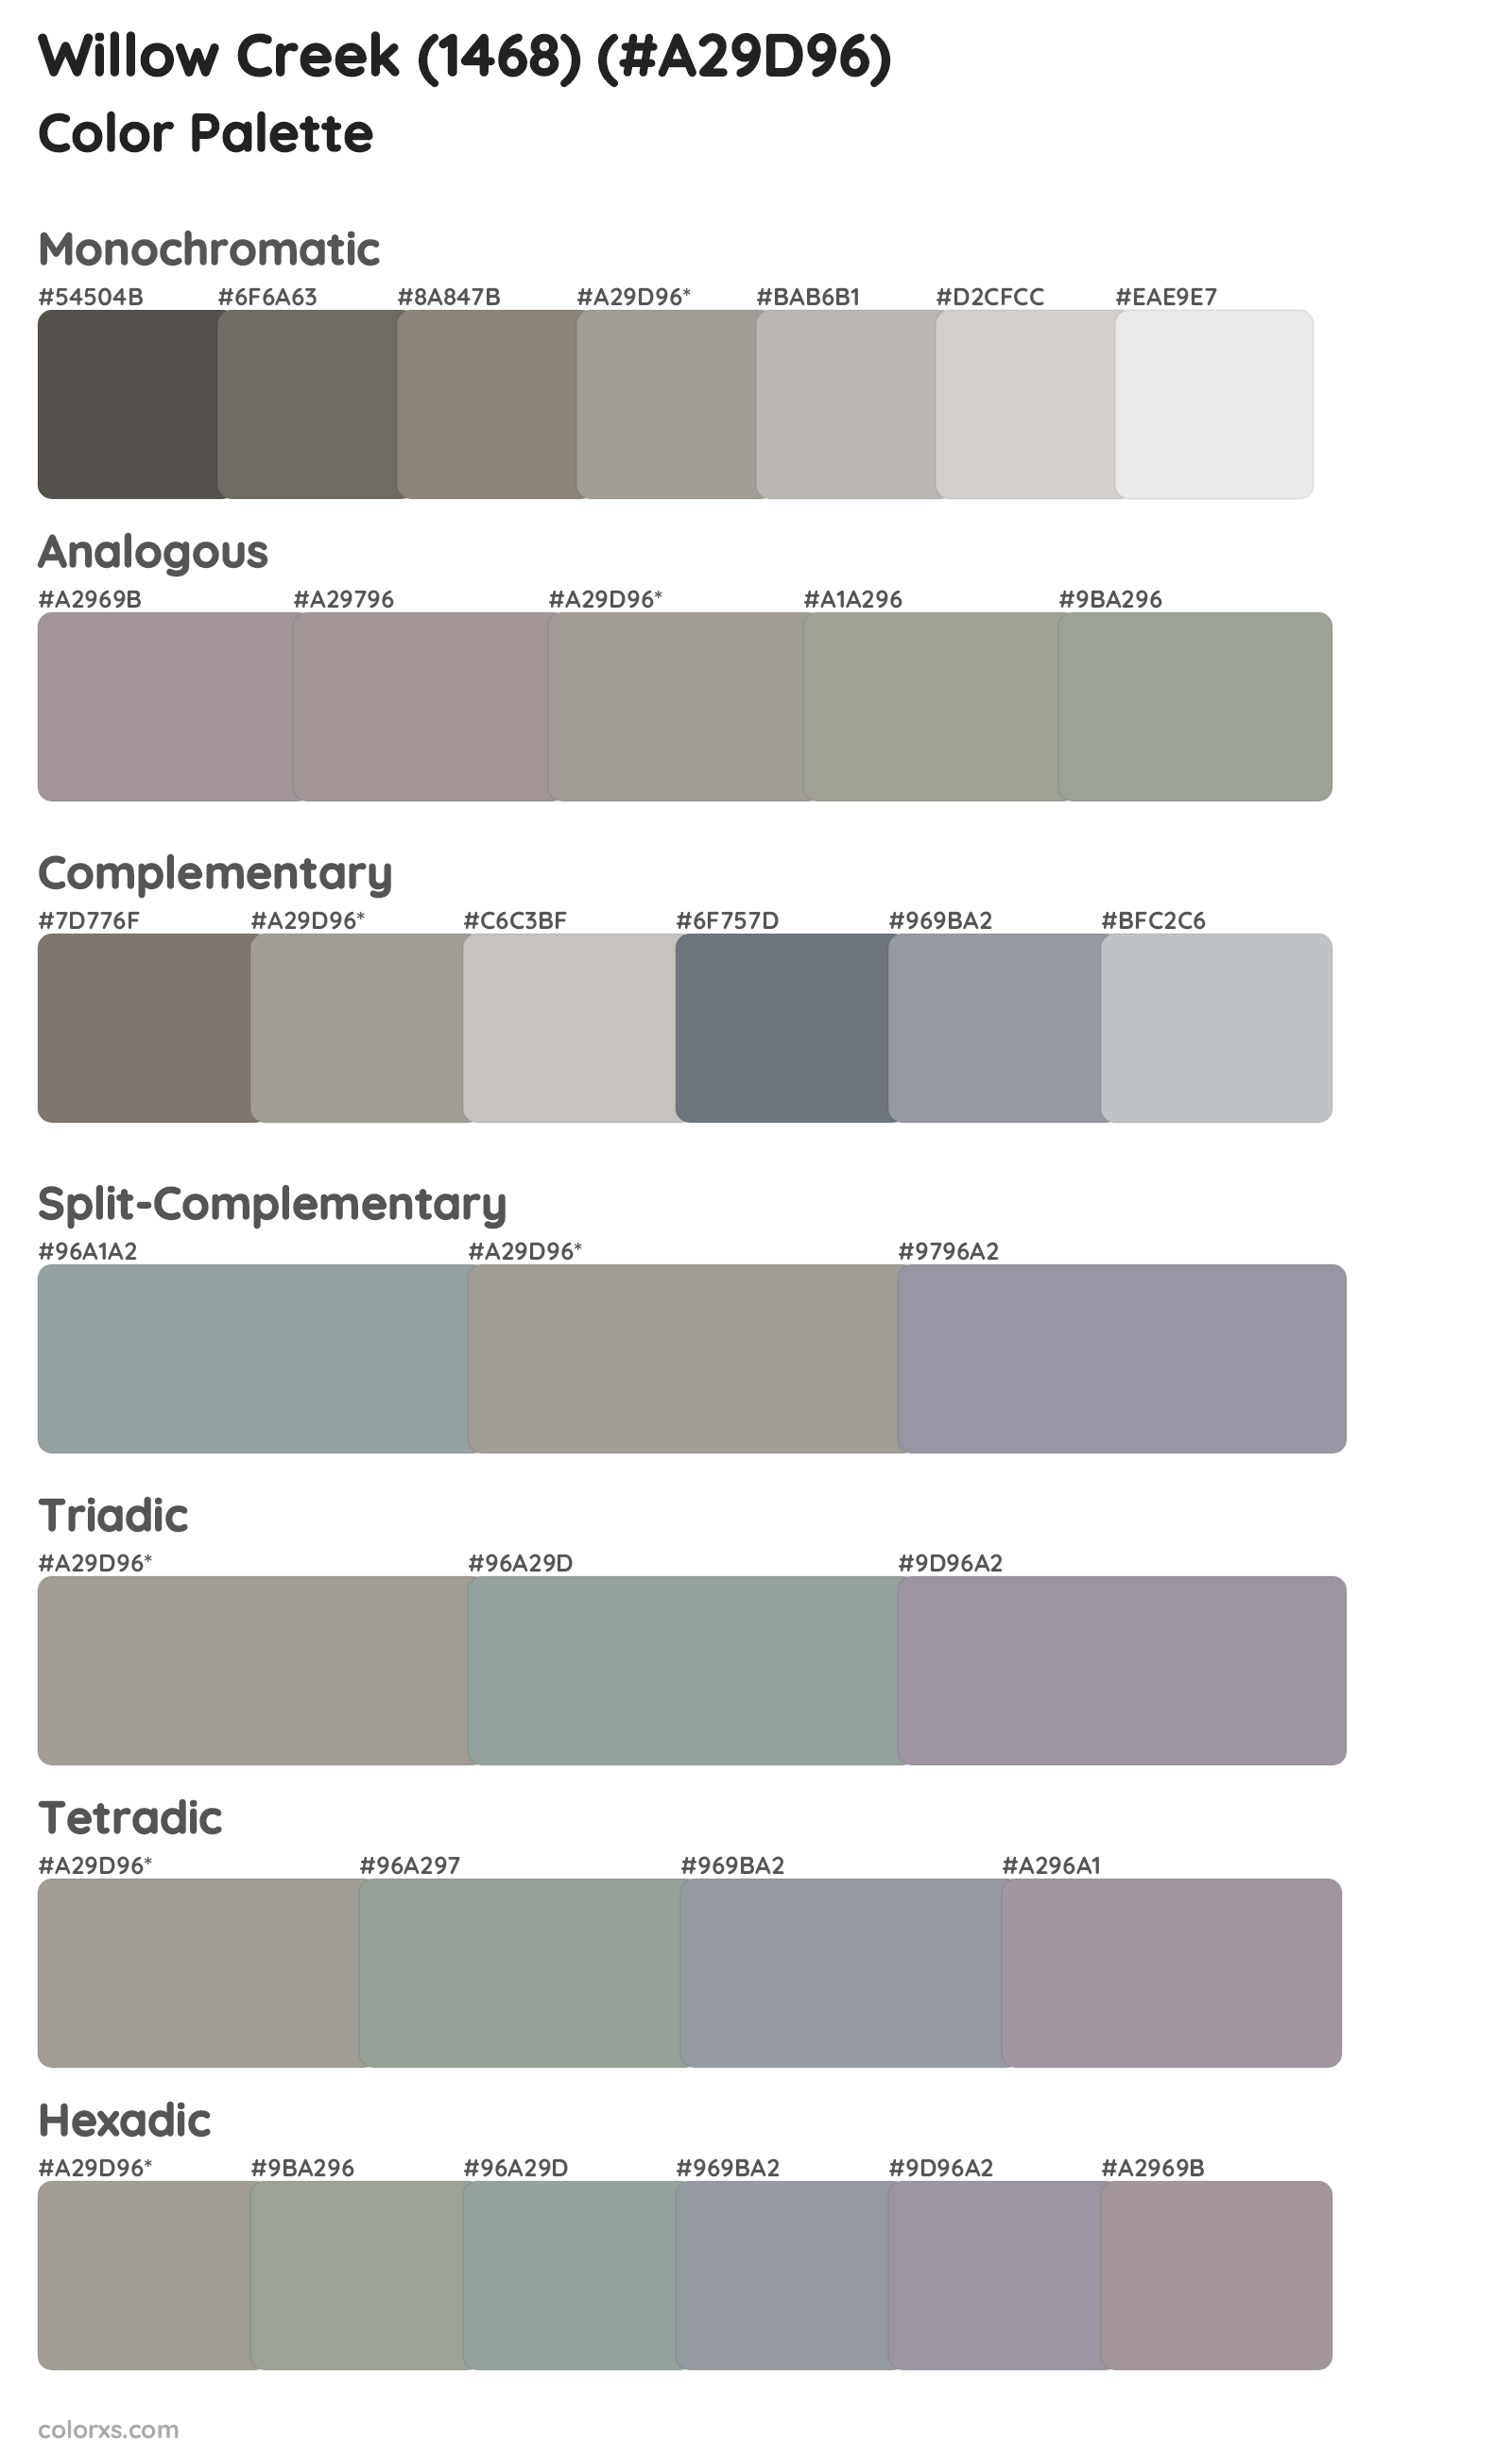 Willow Creek (1468) Color Scheme Palettes